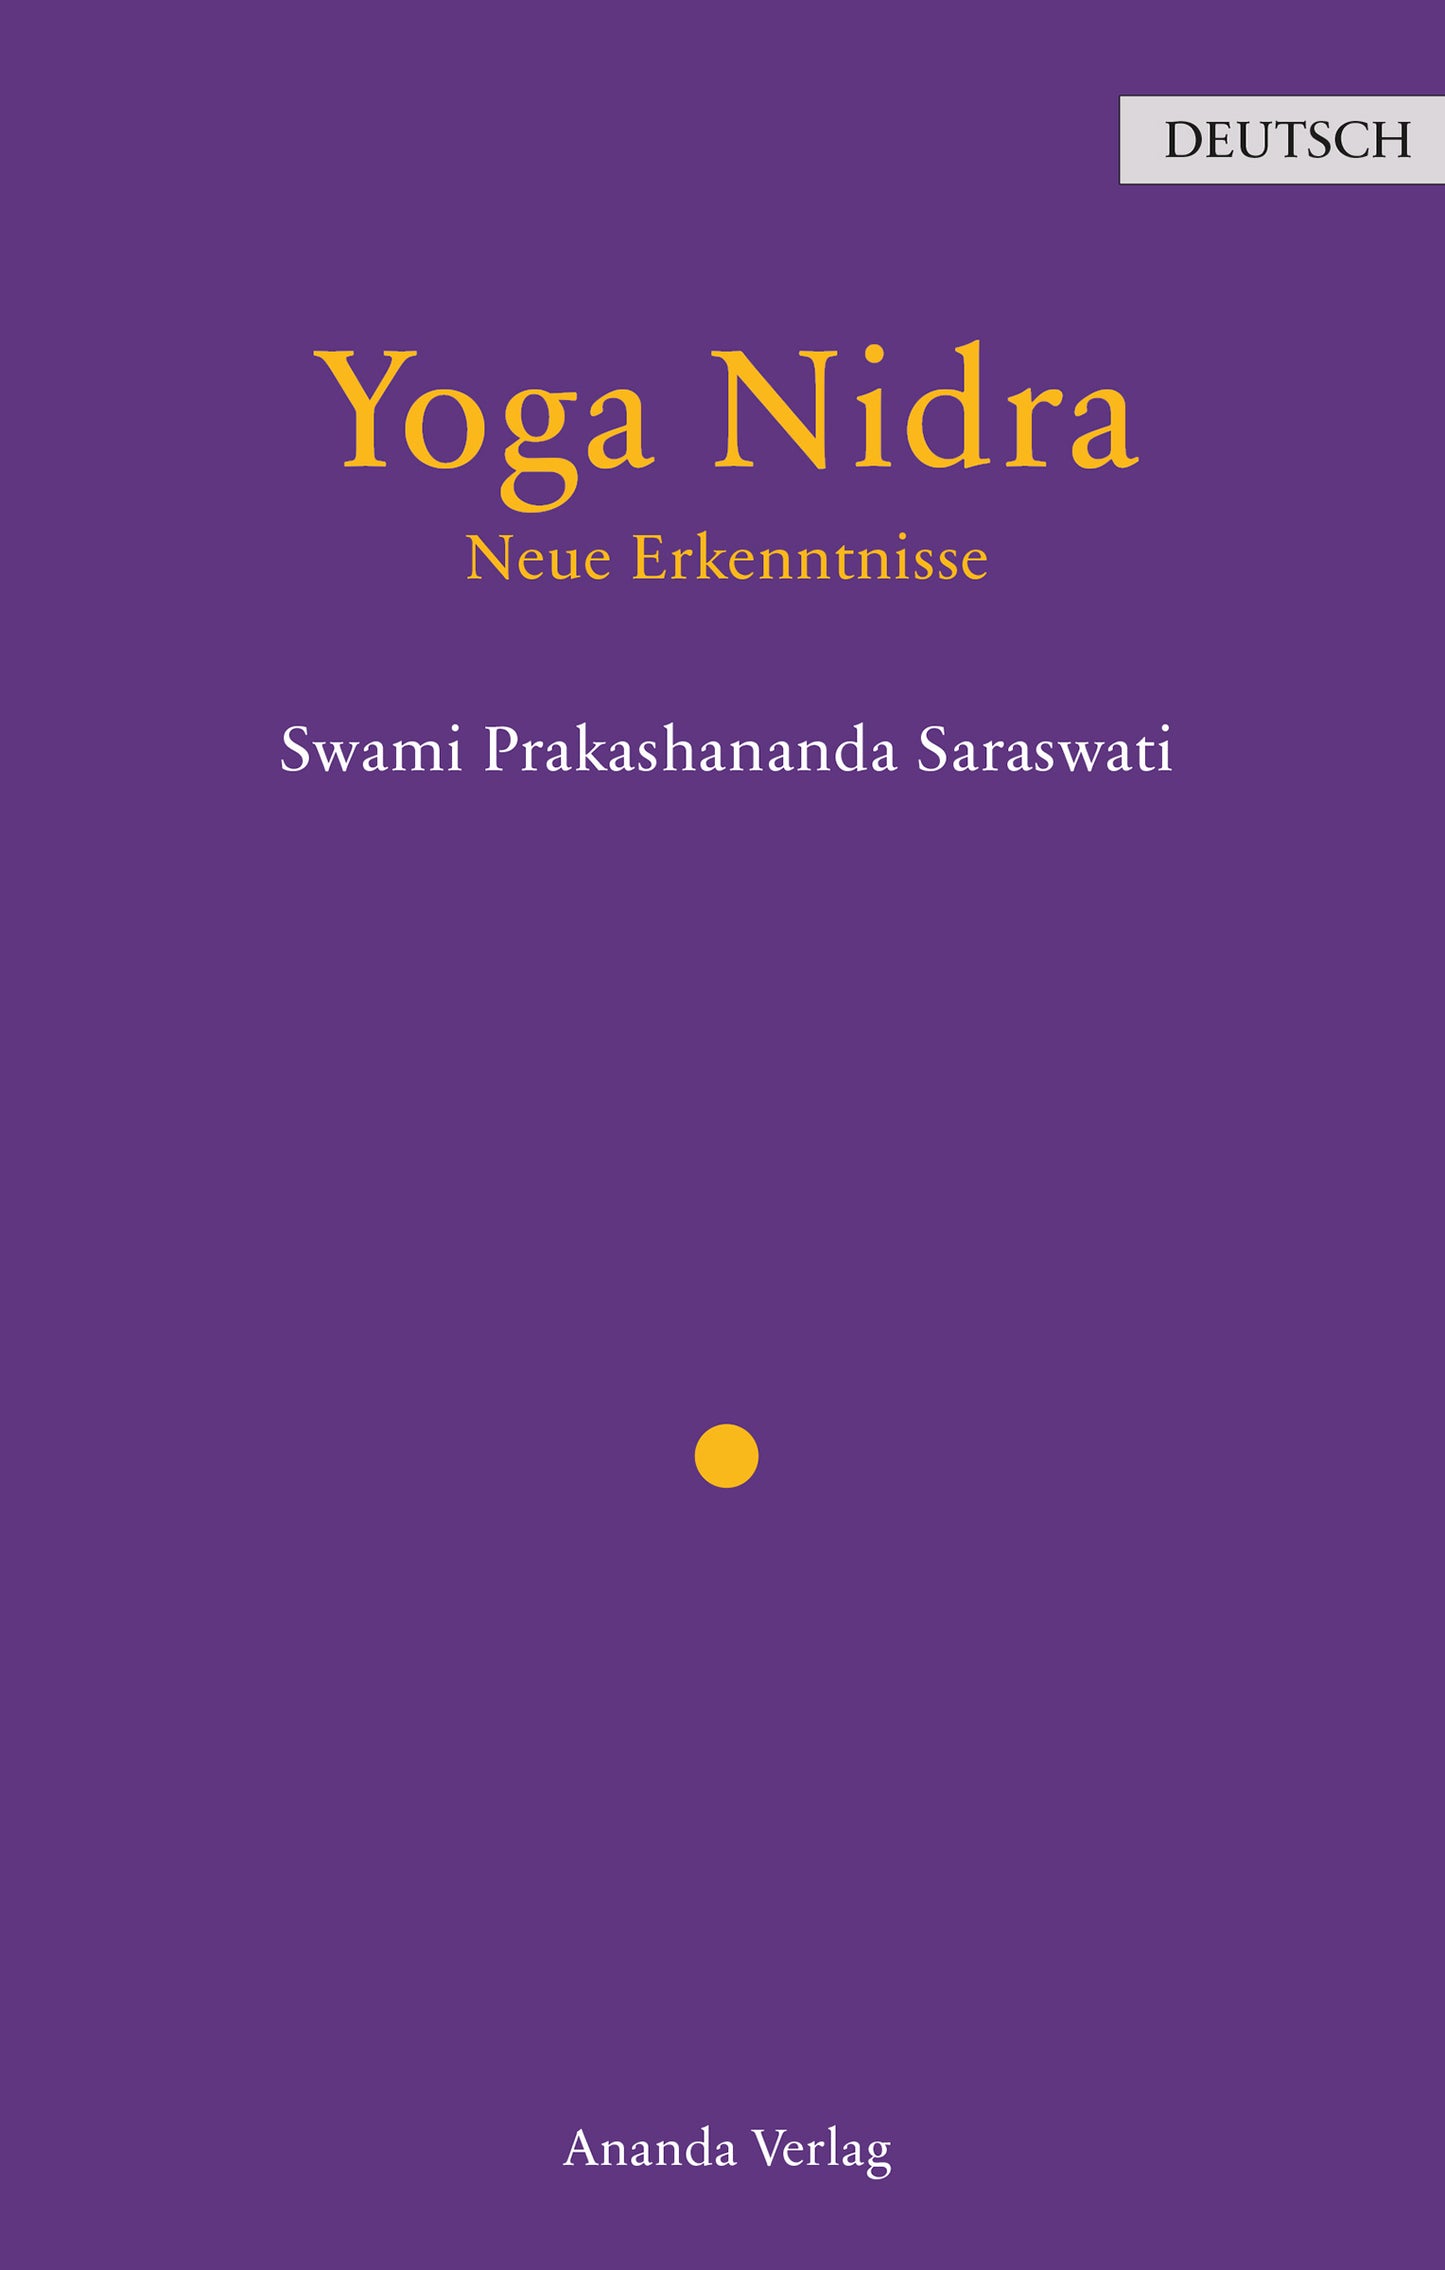 Bild von demYoga Buch Cover – Yoga Nidra – Neue Erkenntnisse 